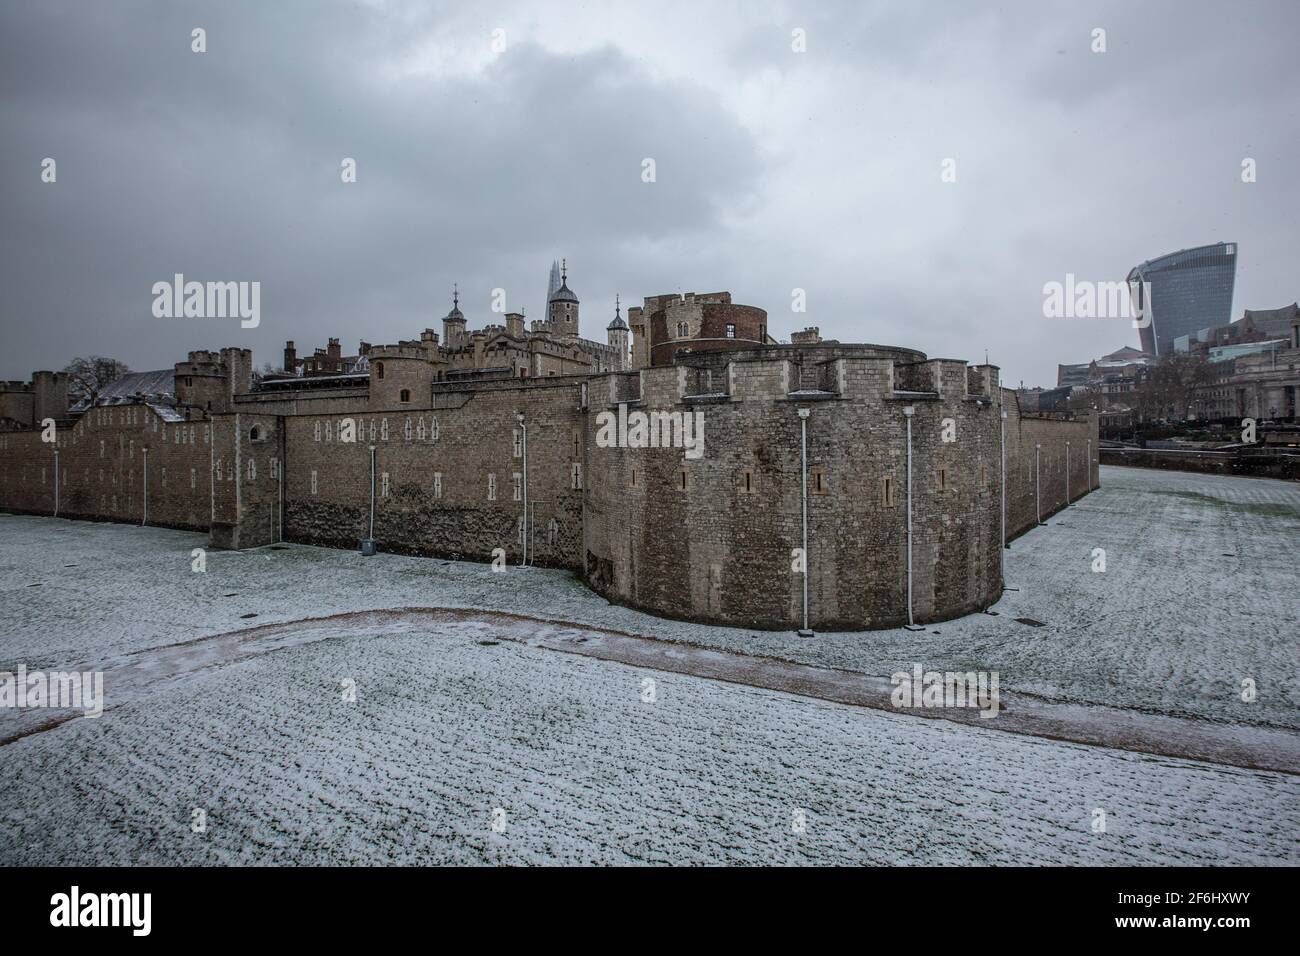 La Tour de Londres a été recouverte de neige alors que les températures glaciales frappent Londres pendant la tempête Darcy, Londres, Angleterre, Royaume-Uni Banque D'Images